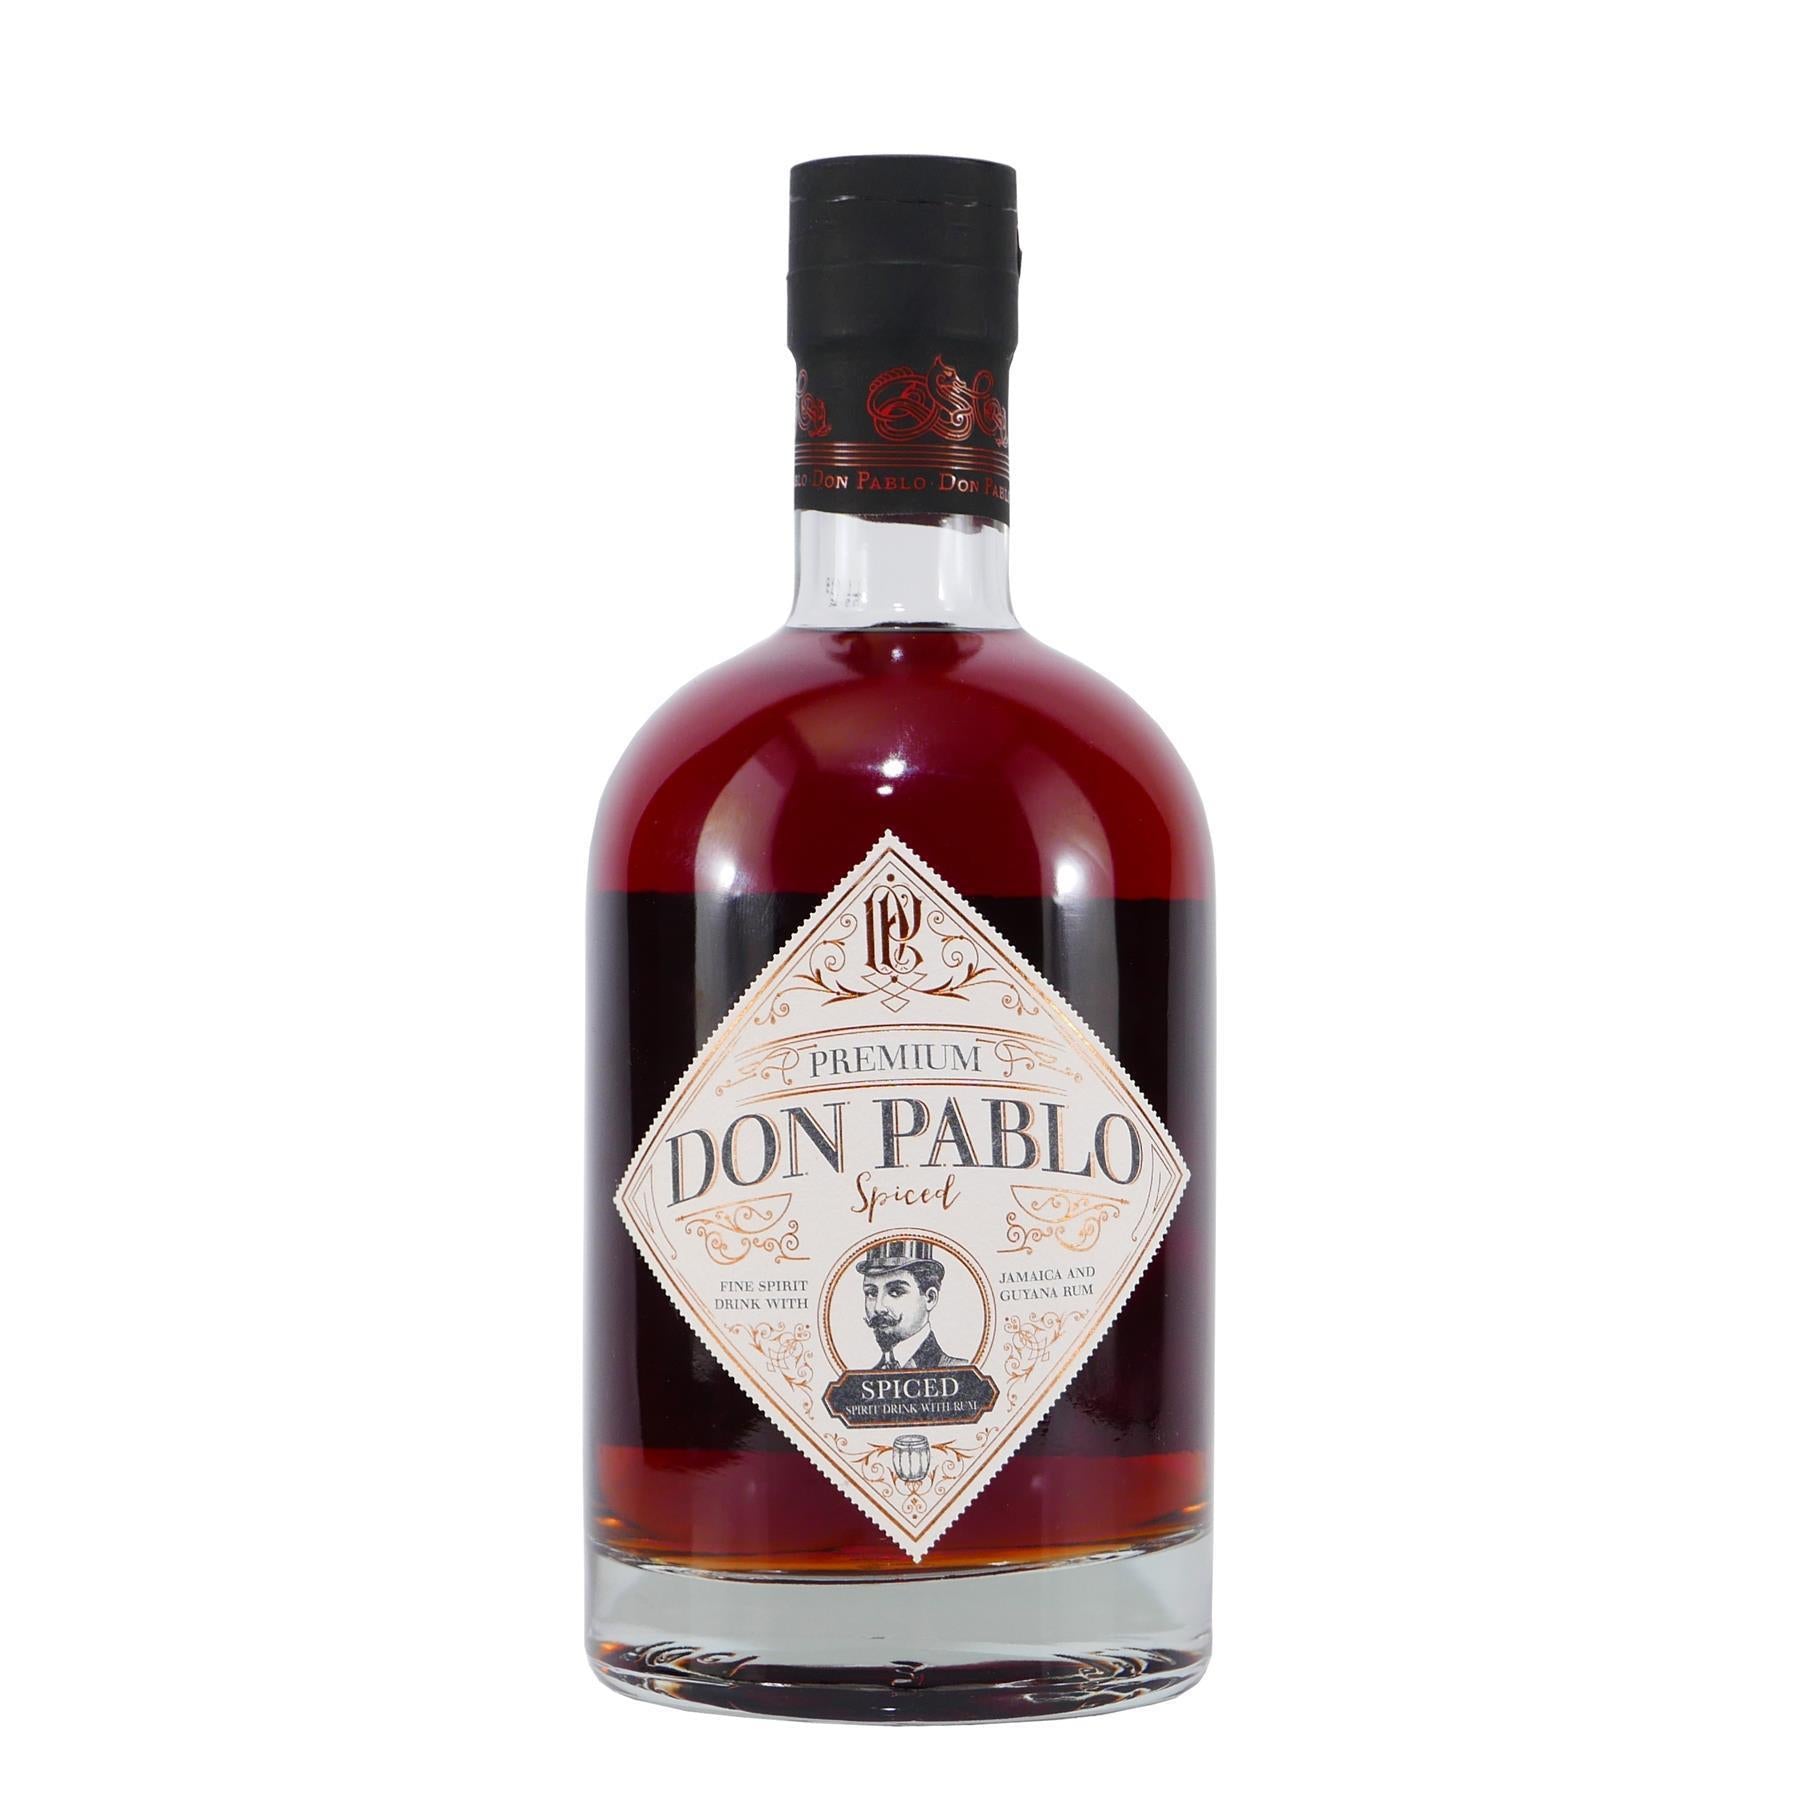 Don Pablo Premium Spiced Rum (6 x 0,7L)